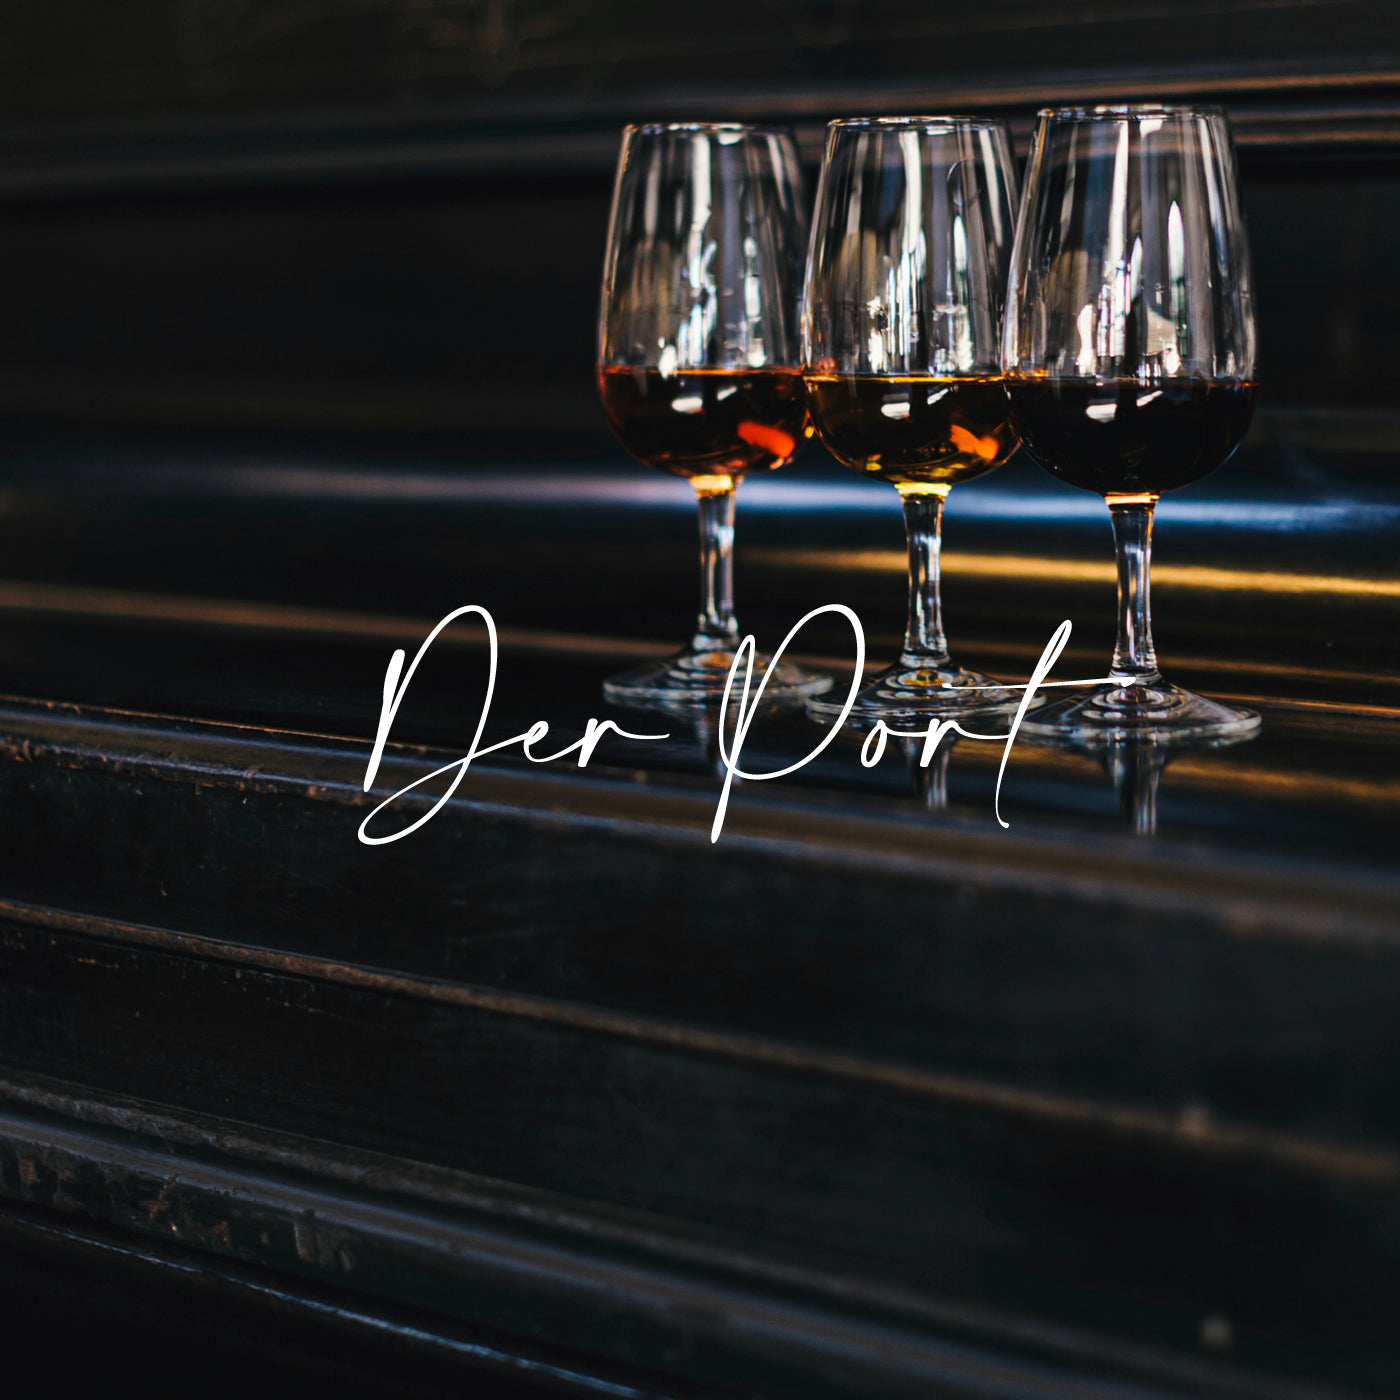 Portweine vom Weingut Quinta de la Rosa in Portugal von der Vinho Bar in Wuppertal. Bild mit drei Portweingläsern auf einem Klavier stehend.